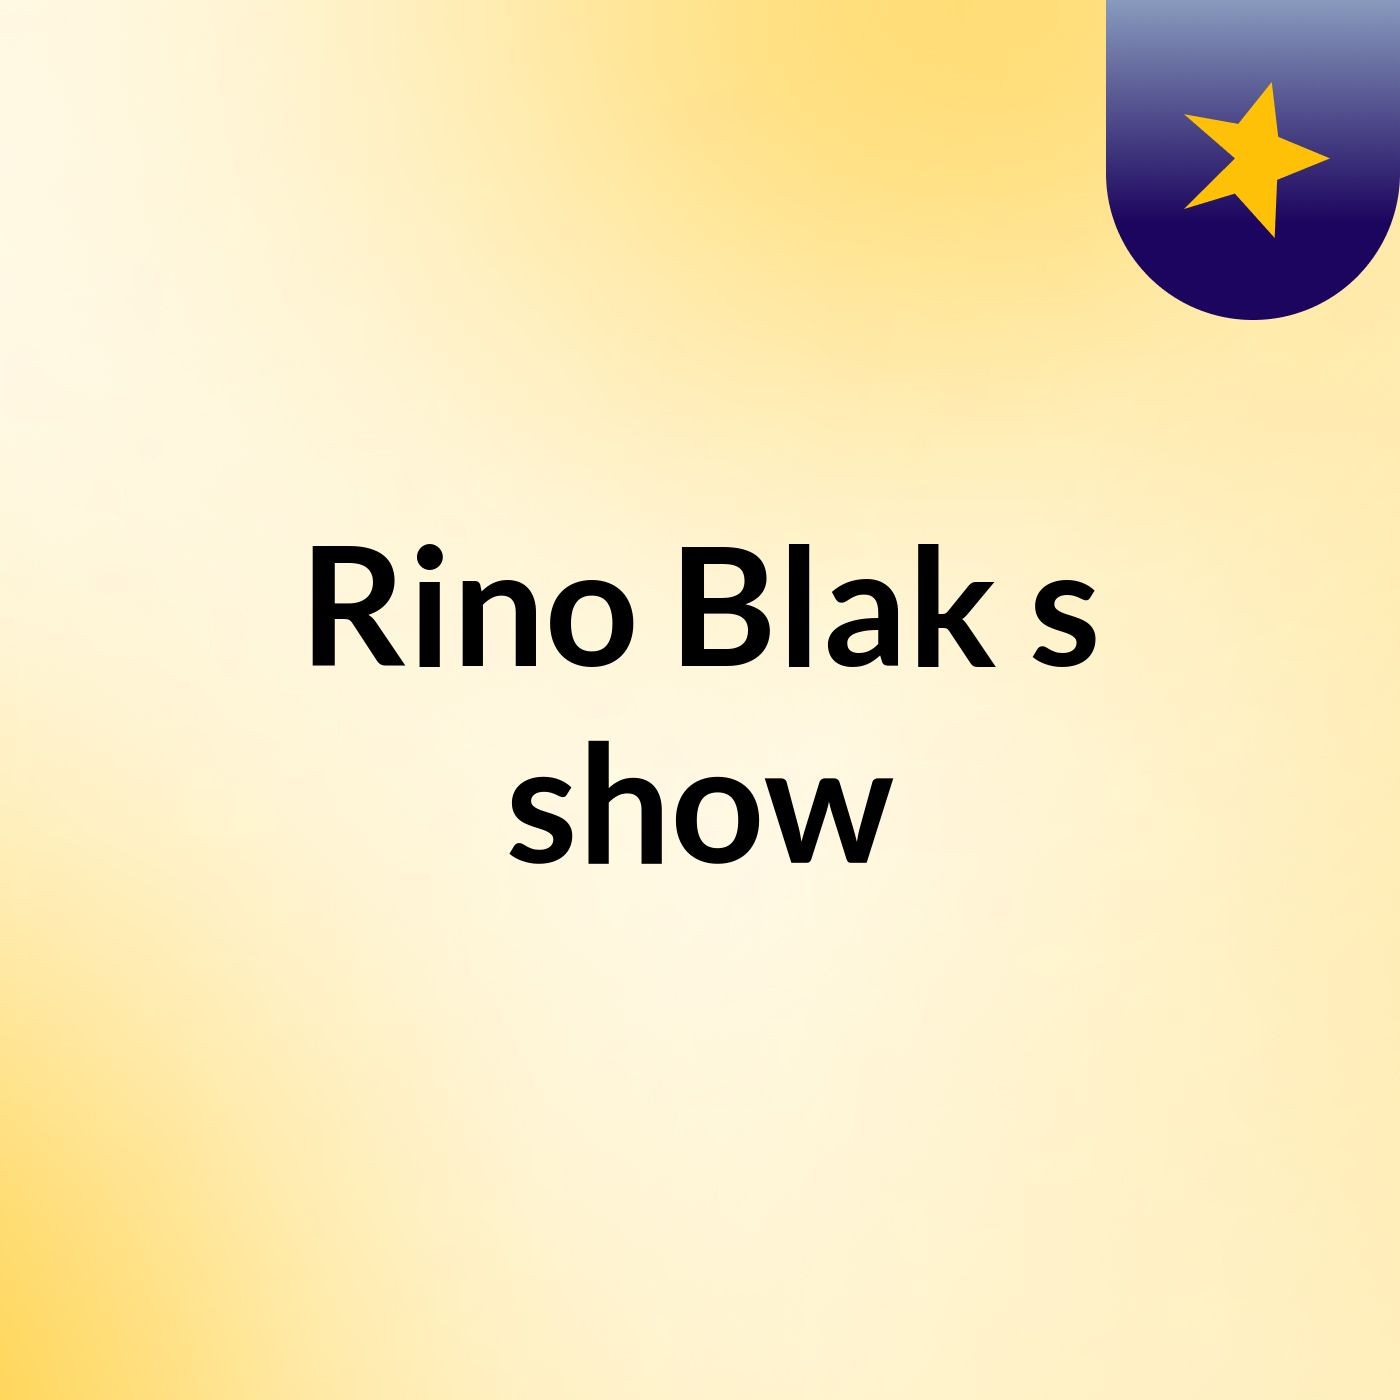 Rino Blak's show